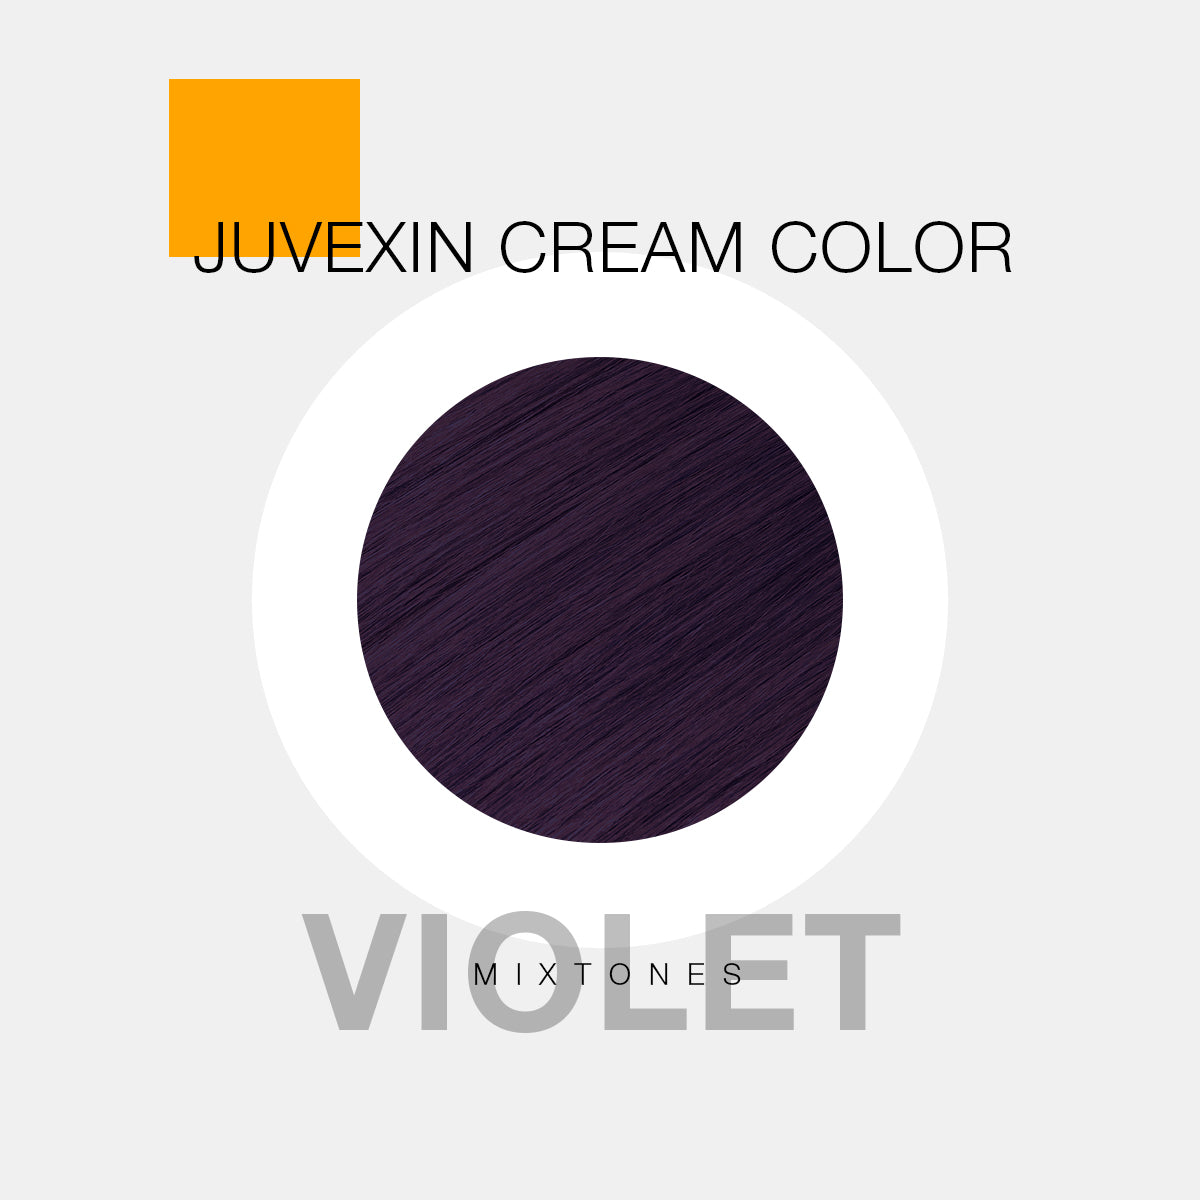 Juvexin Cream Color Pro Mixtones